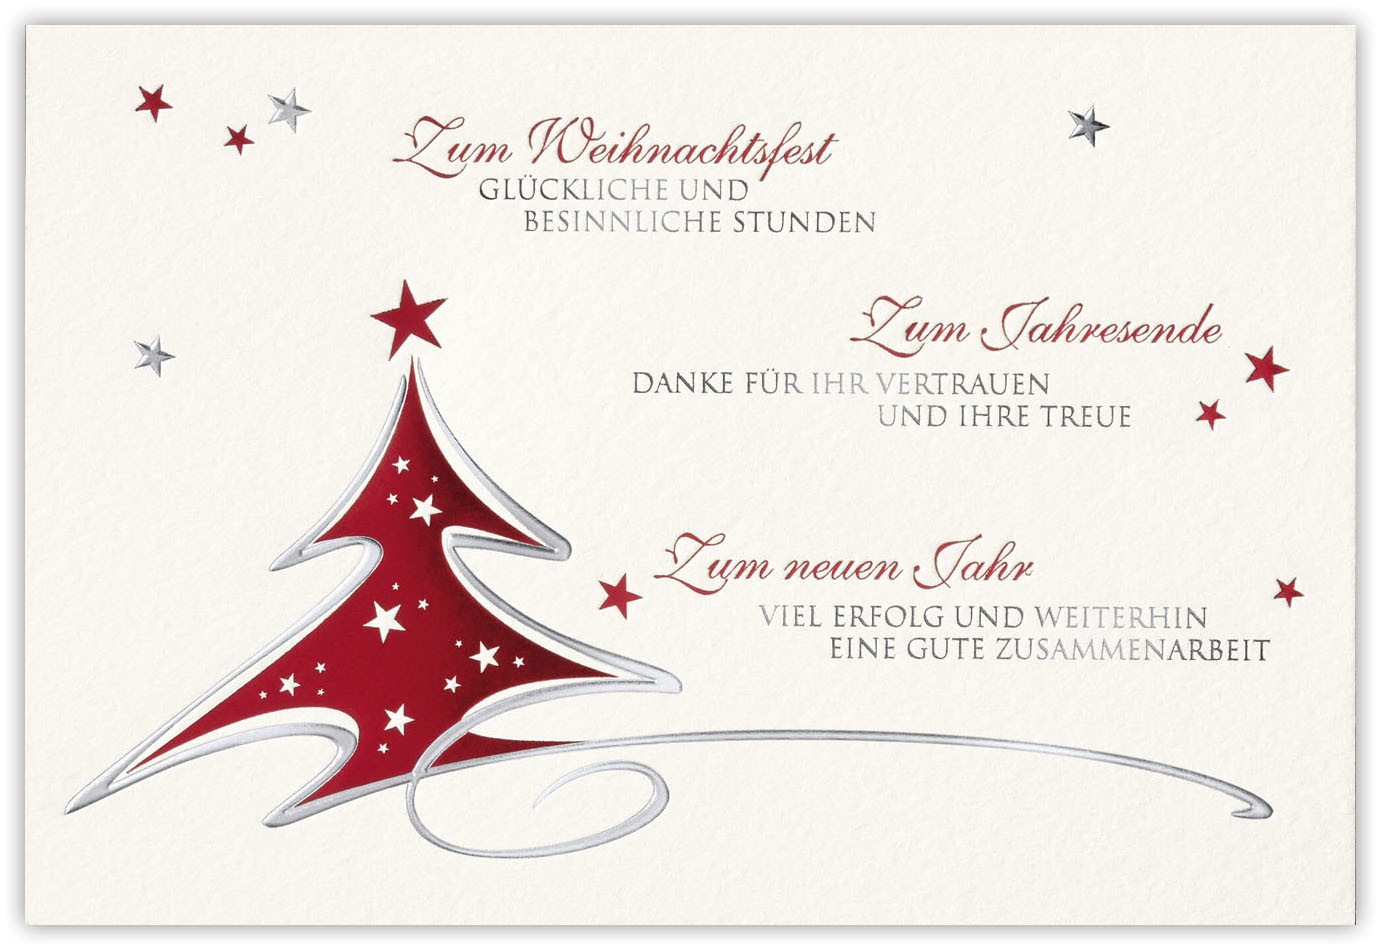 Geschaftliche Weihnachtskarte Cremefarben Mit Dank Fur Vertrauen Und Treue Weihnachten Weihnachtskarten Moderne Weihnachtskarten Alle Karten De